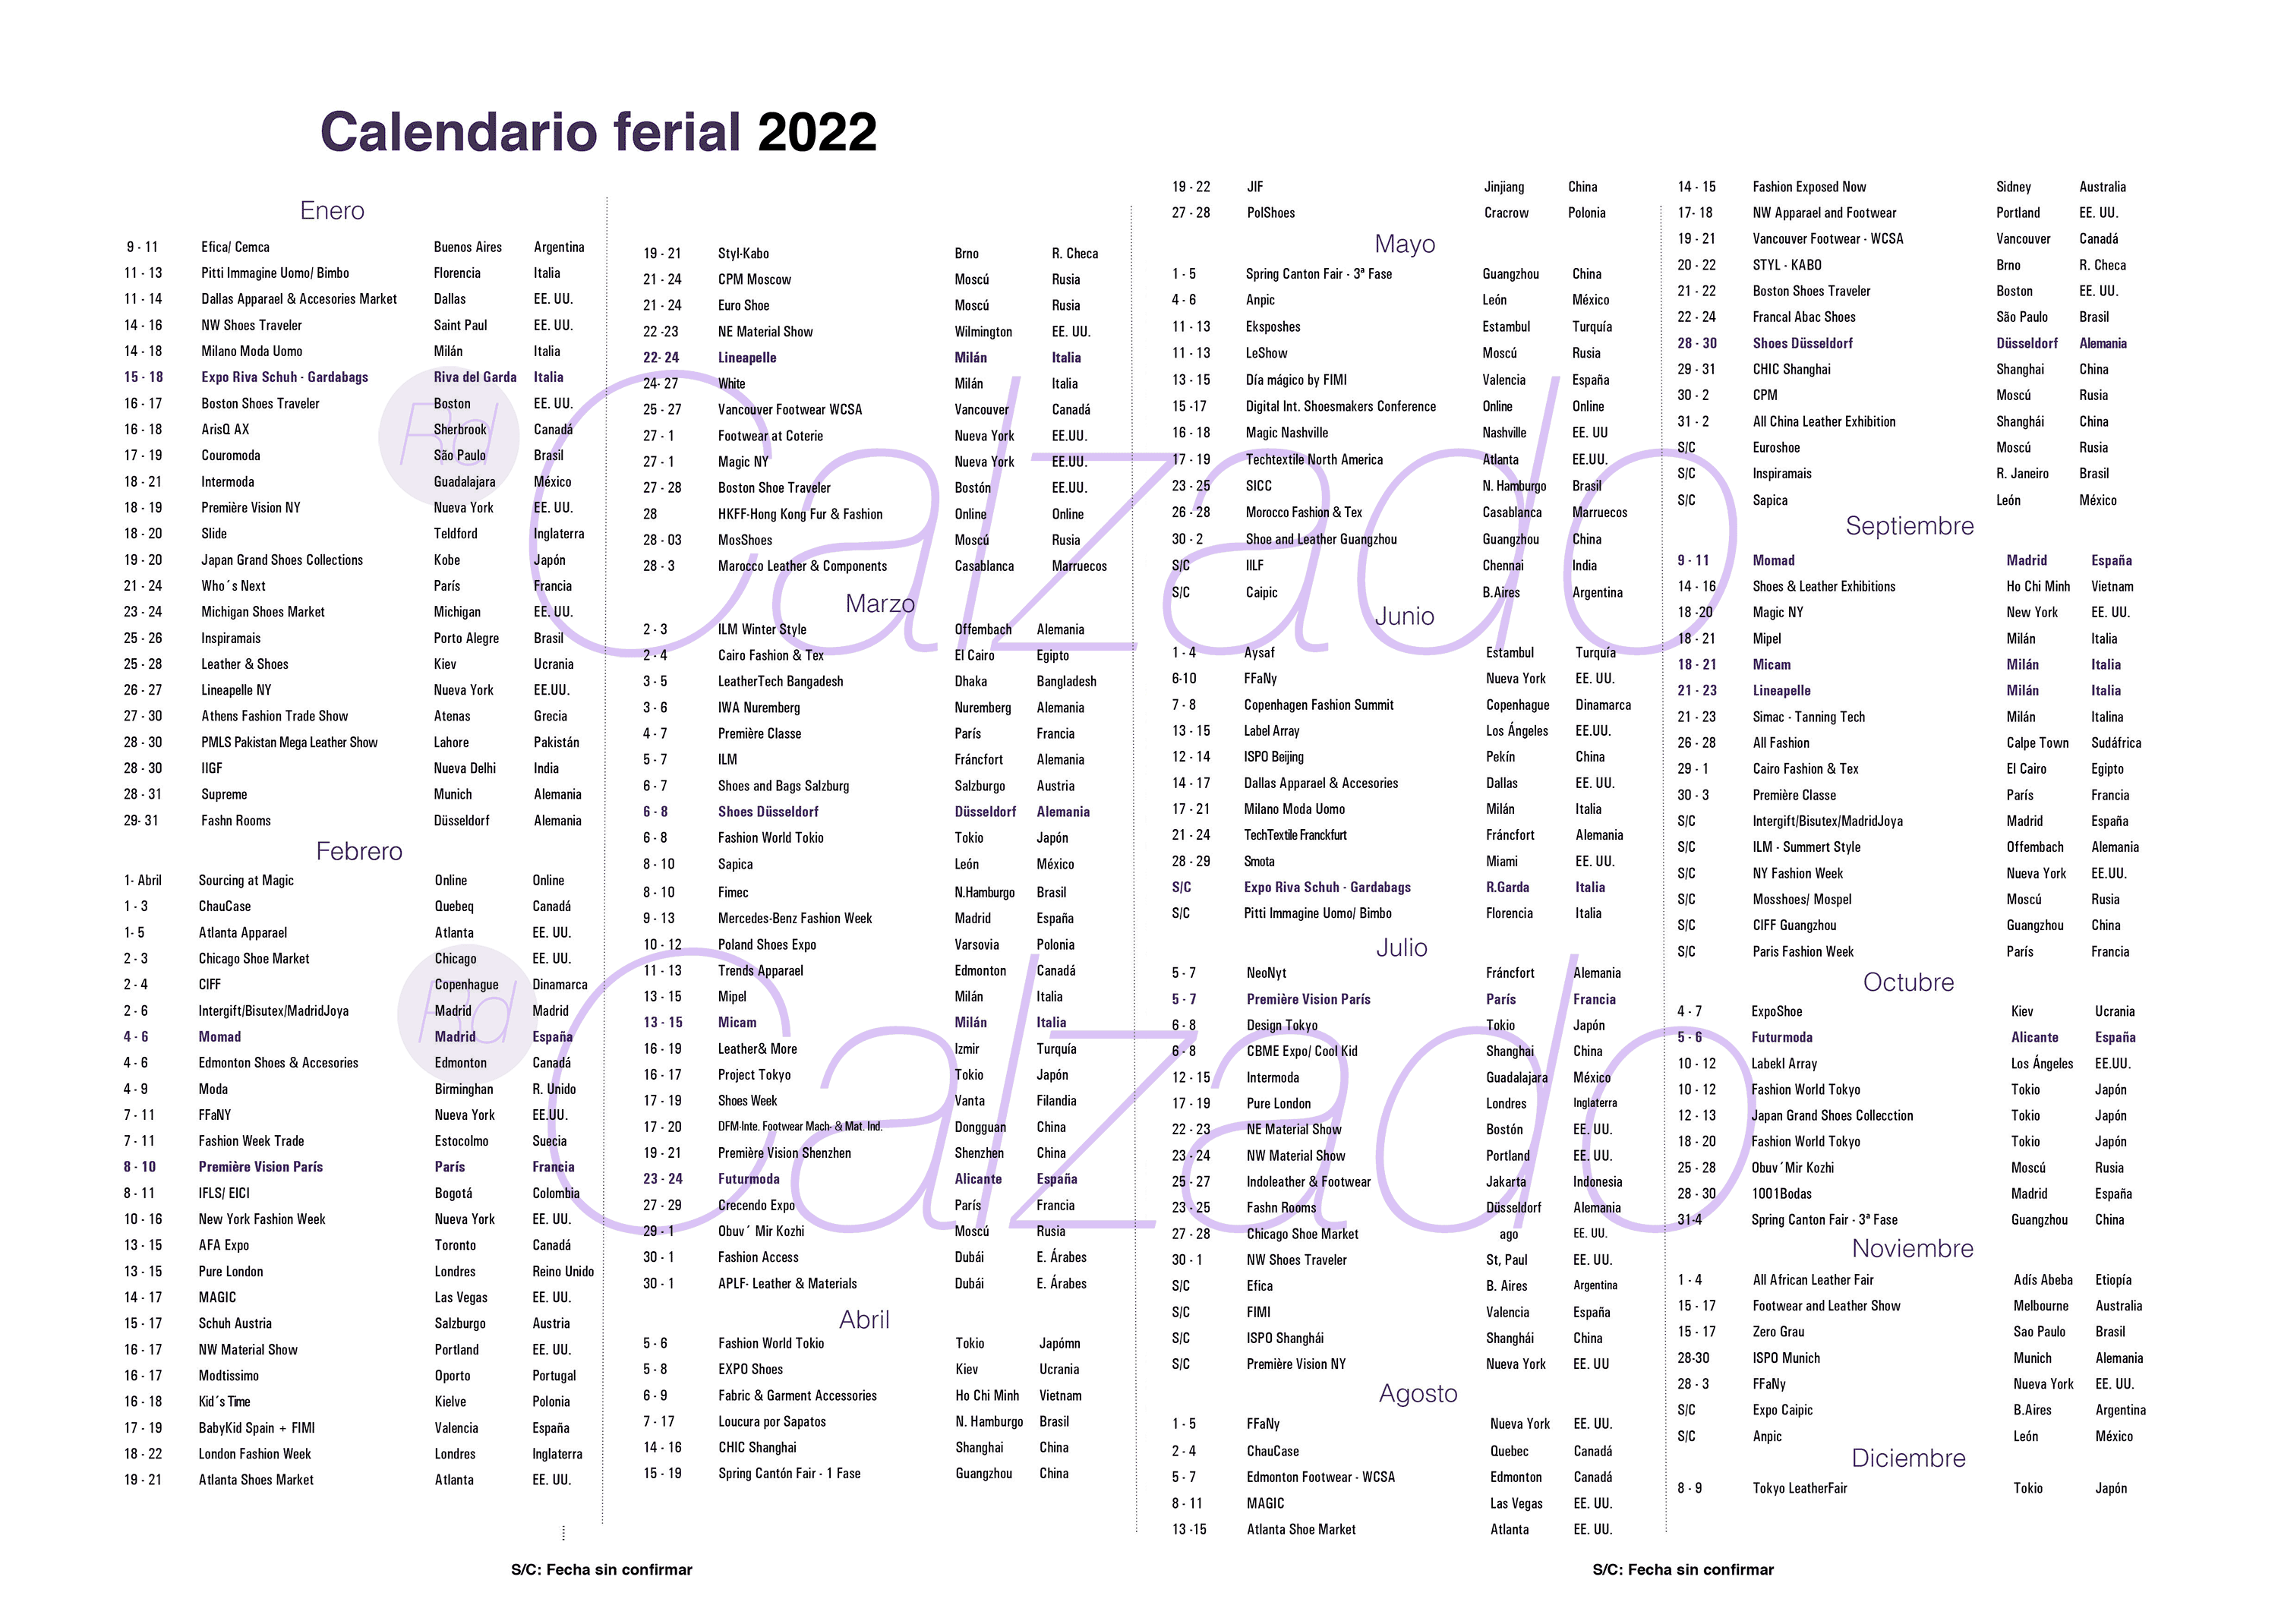 Calendario ferial para la industria de calzado en 202